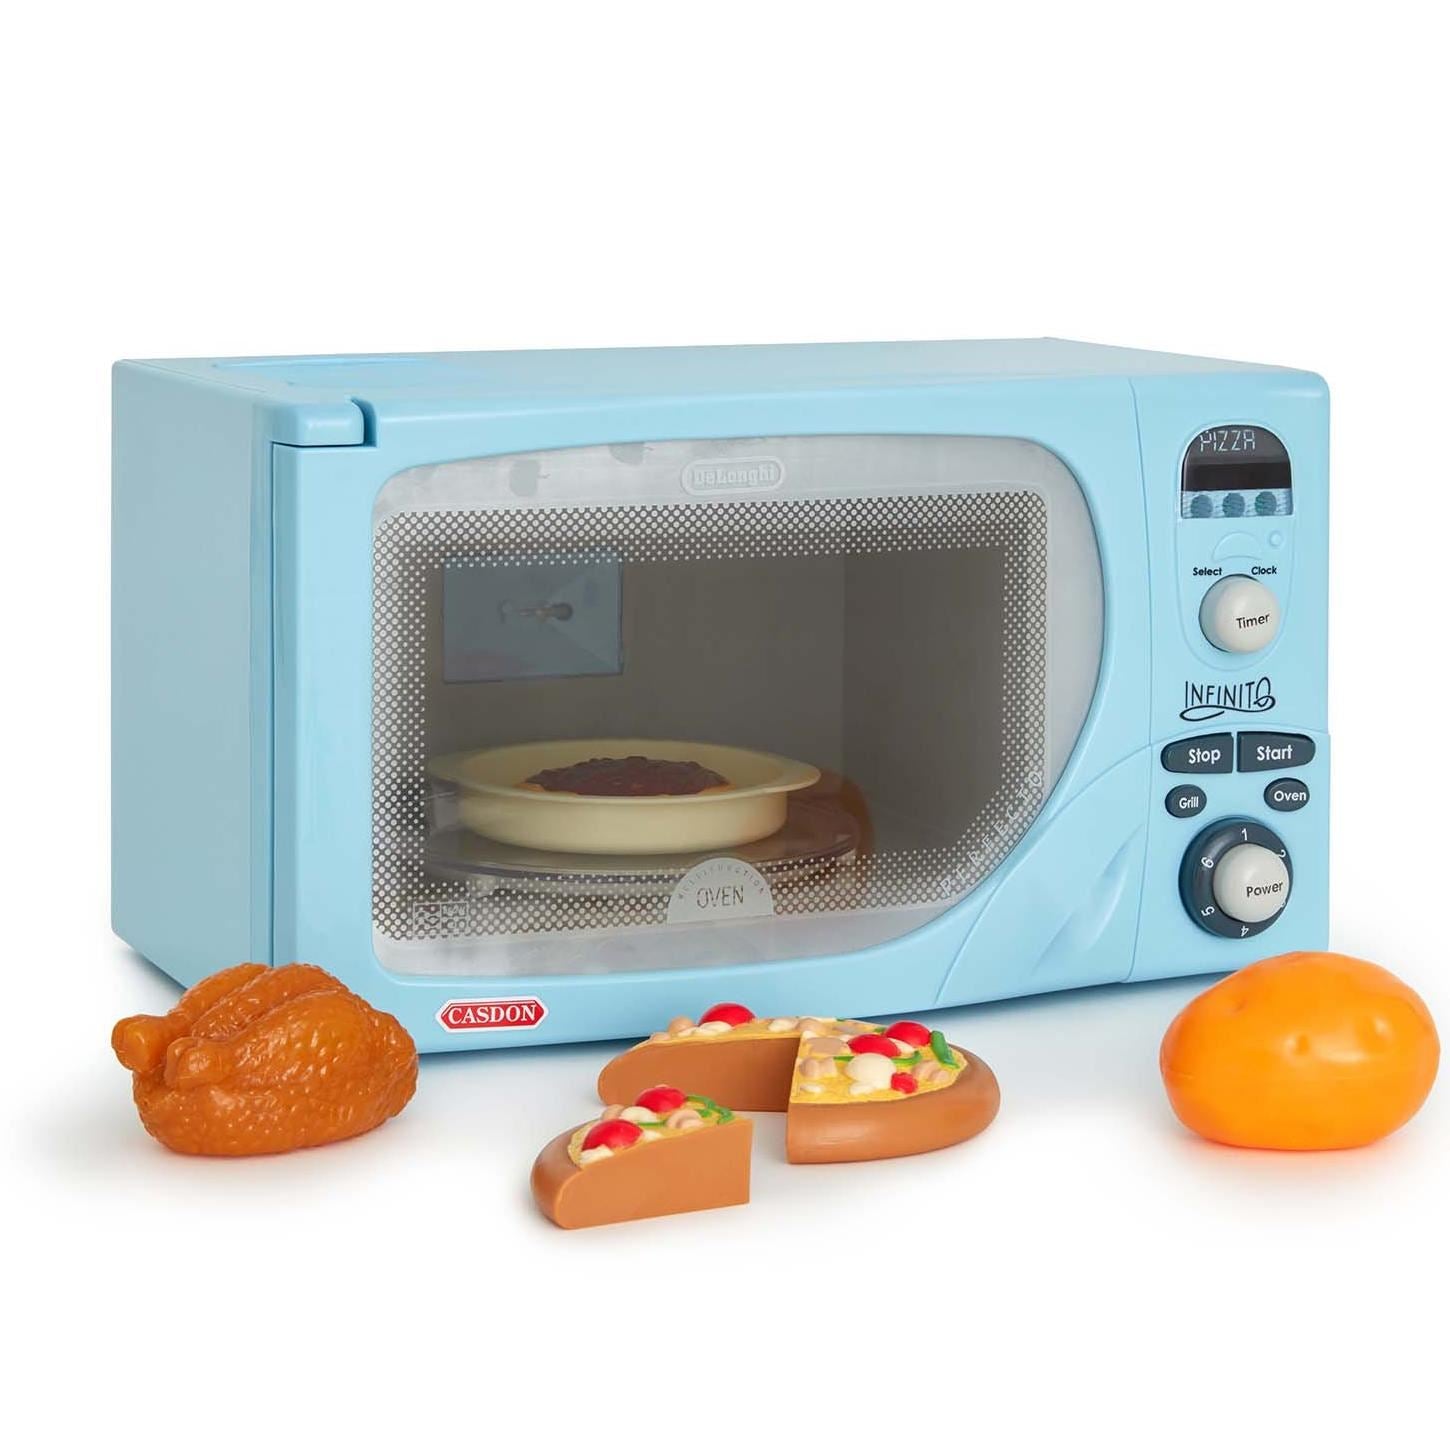 Toy De Longhi Microwave